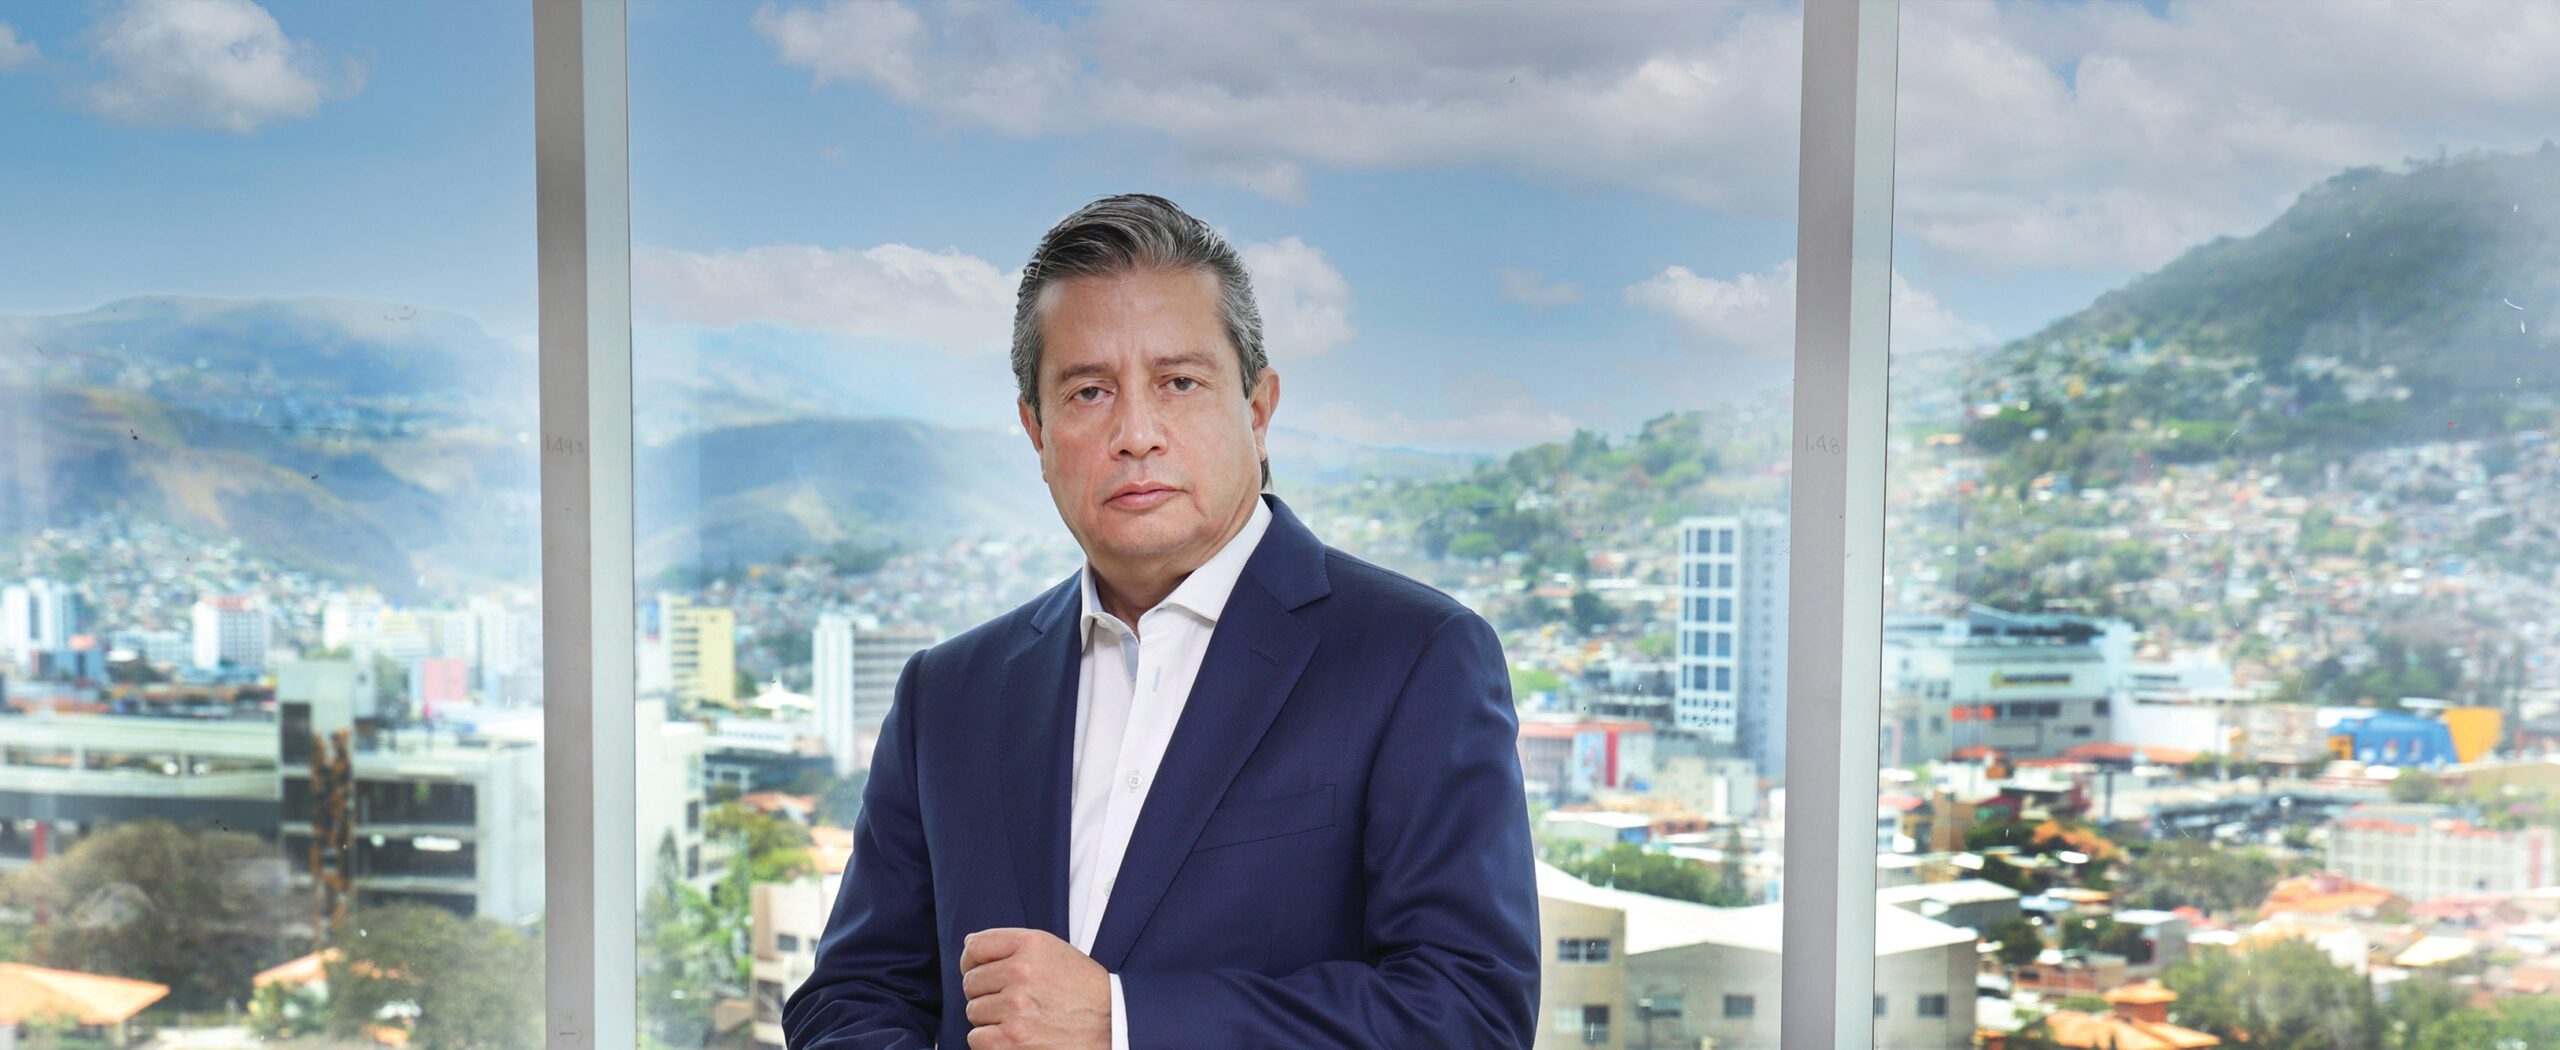 Daniel Fortín preside la Camara de Comercio e Industria de Tegucigalpa. Por Roberto J. Argüello, chairman Northern Media Group